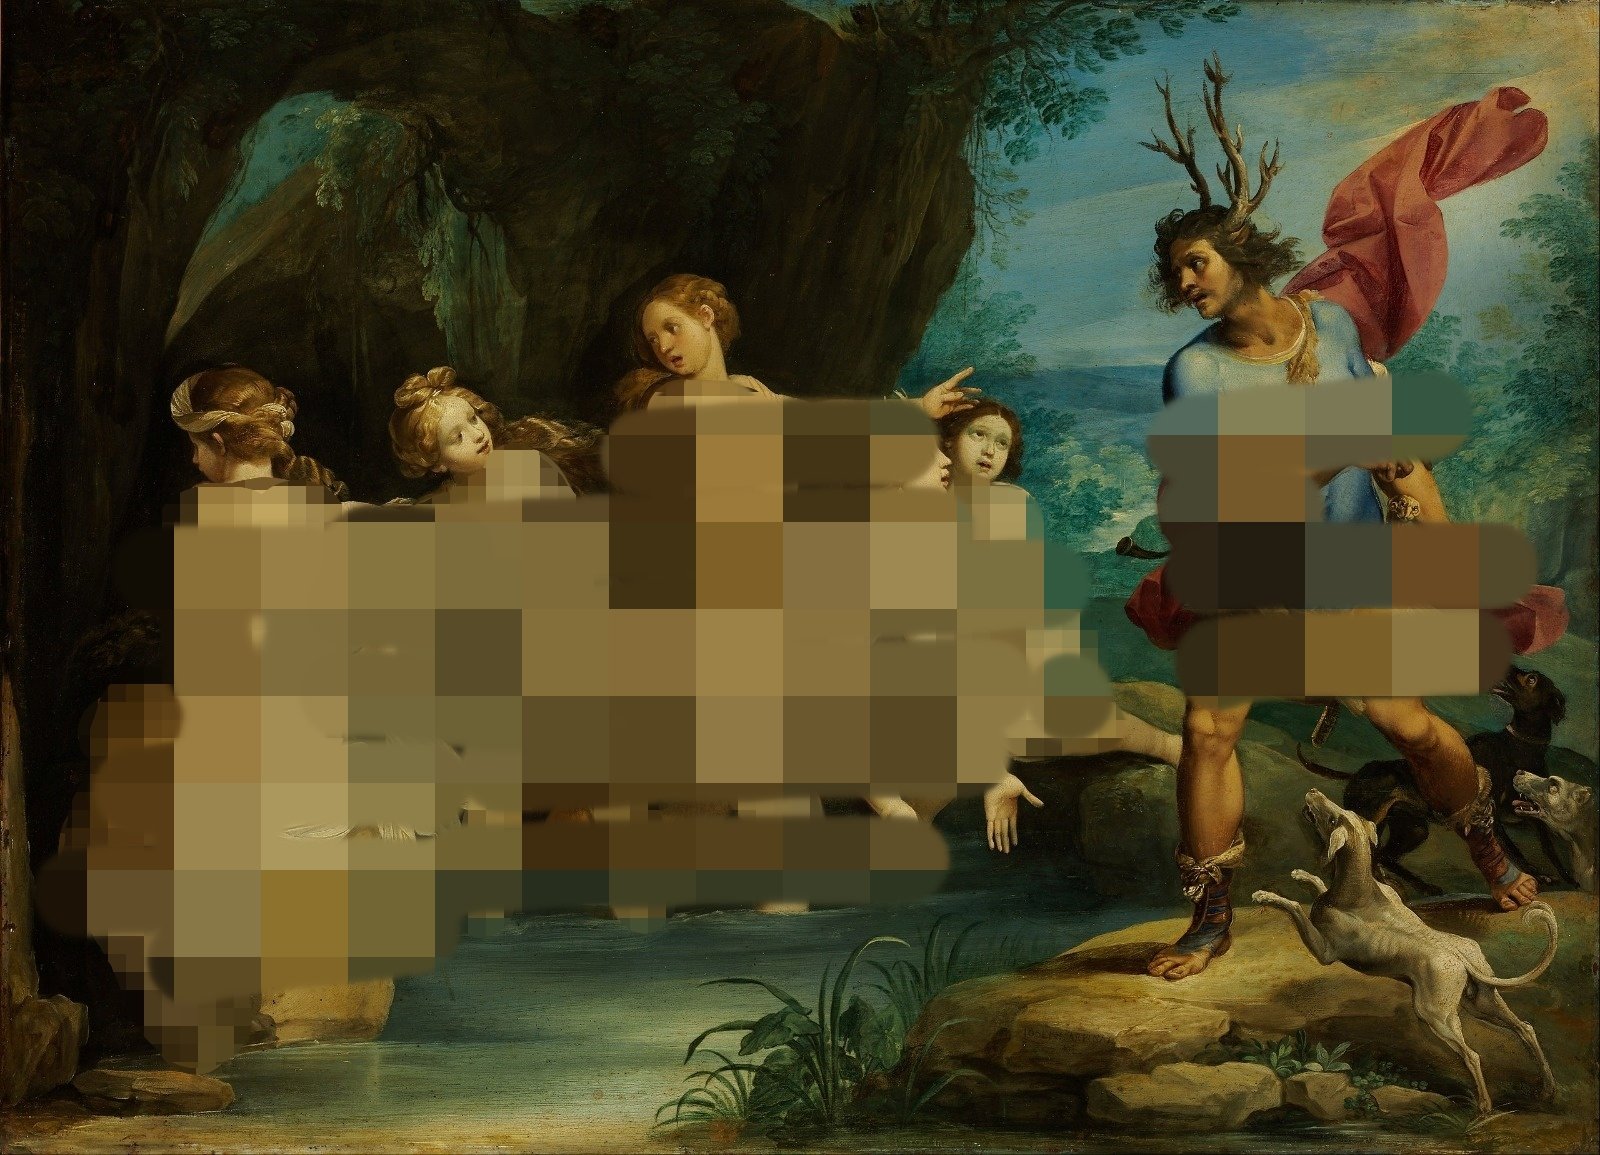 17世纪意大利画家塞萨里的画作《戴安娜与阿克泰翁》（Diana and Actaeon）。这幅画现藏于巴黎罗浮宫，内容描绘猎人阿克泰翁闯入女神戴安娜和4名仙女沐浴之处的希腊神话故事，画中5名女子全身赤裸。（图取自维基百科）